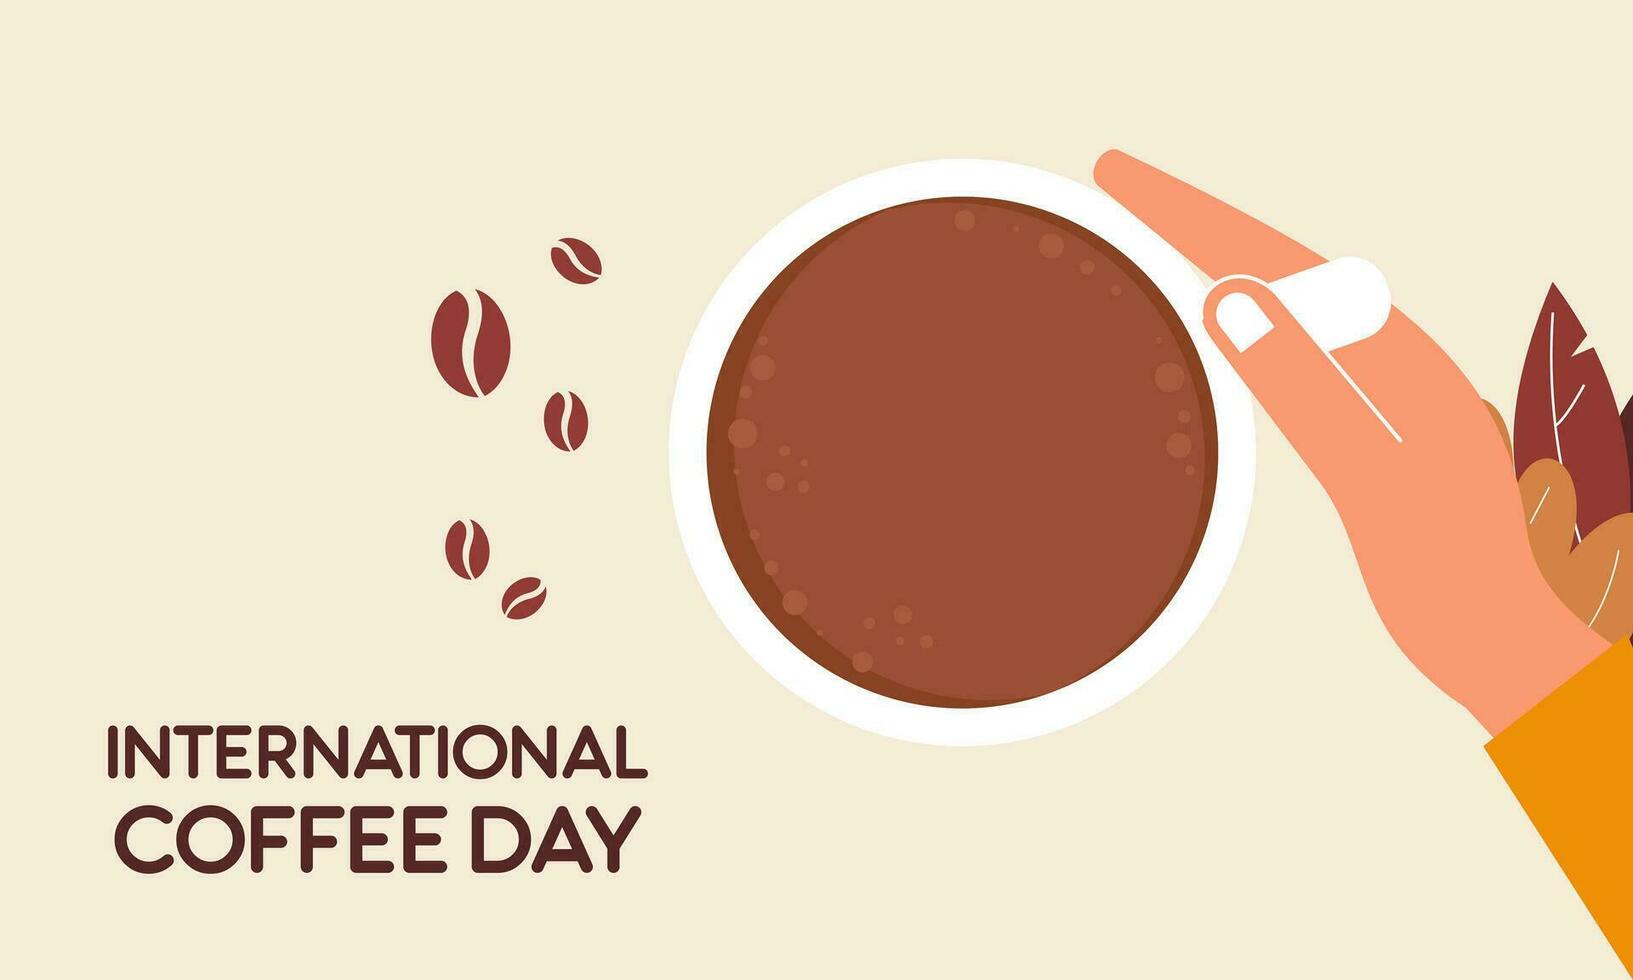 internazionale giorno di caffè illustrazione mano disegnato vettore